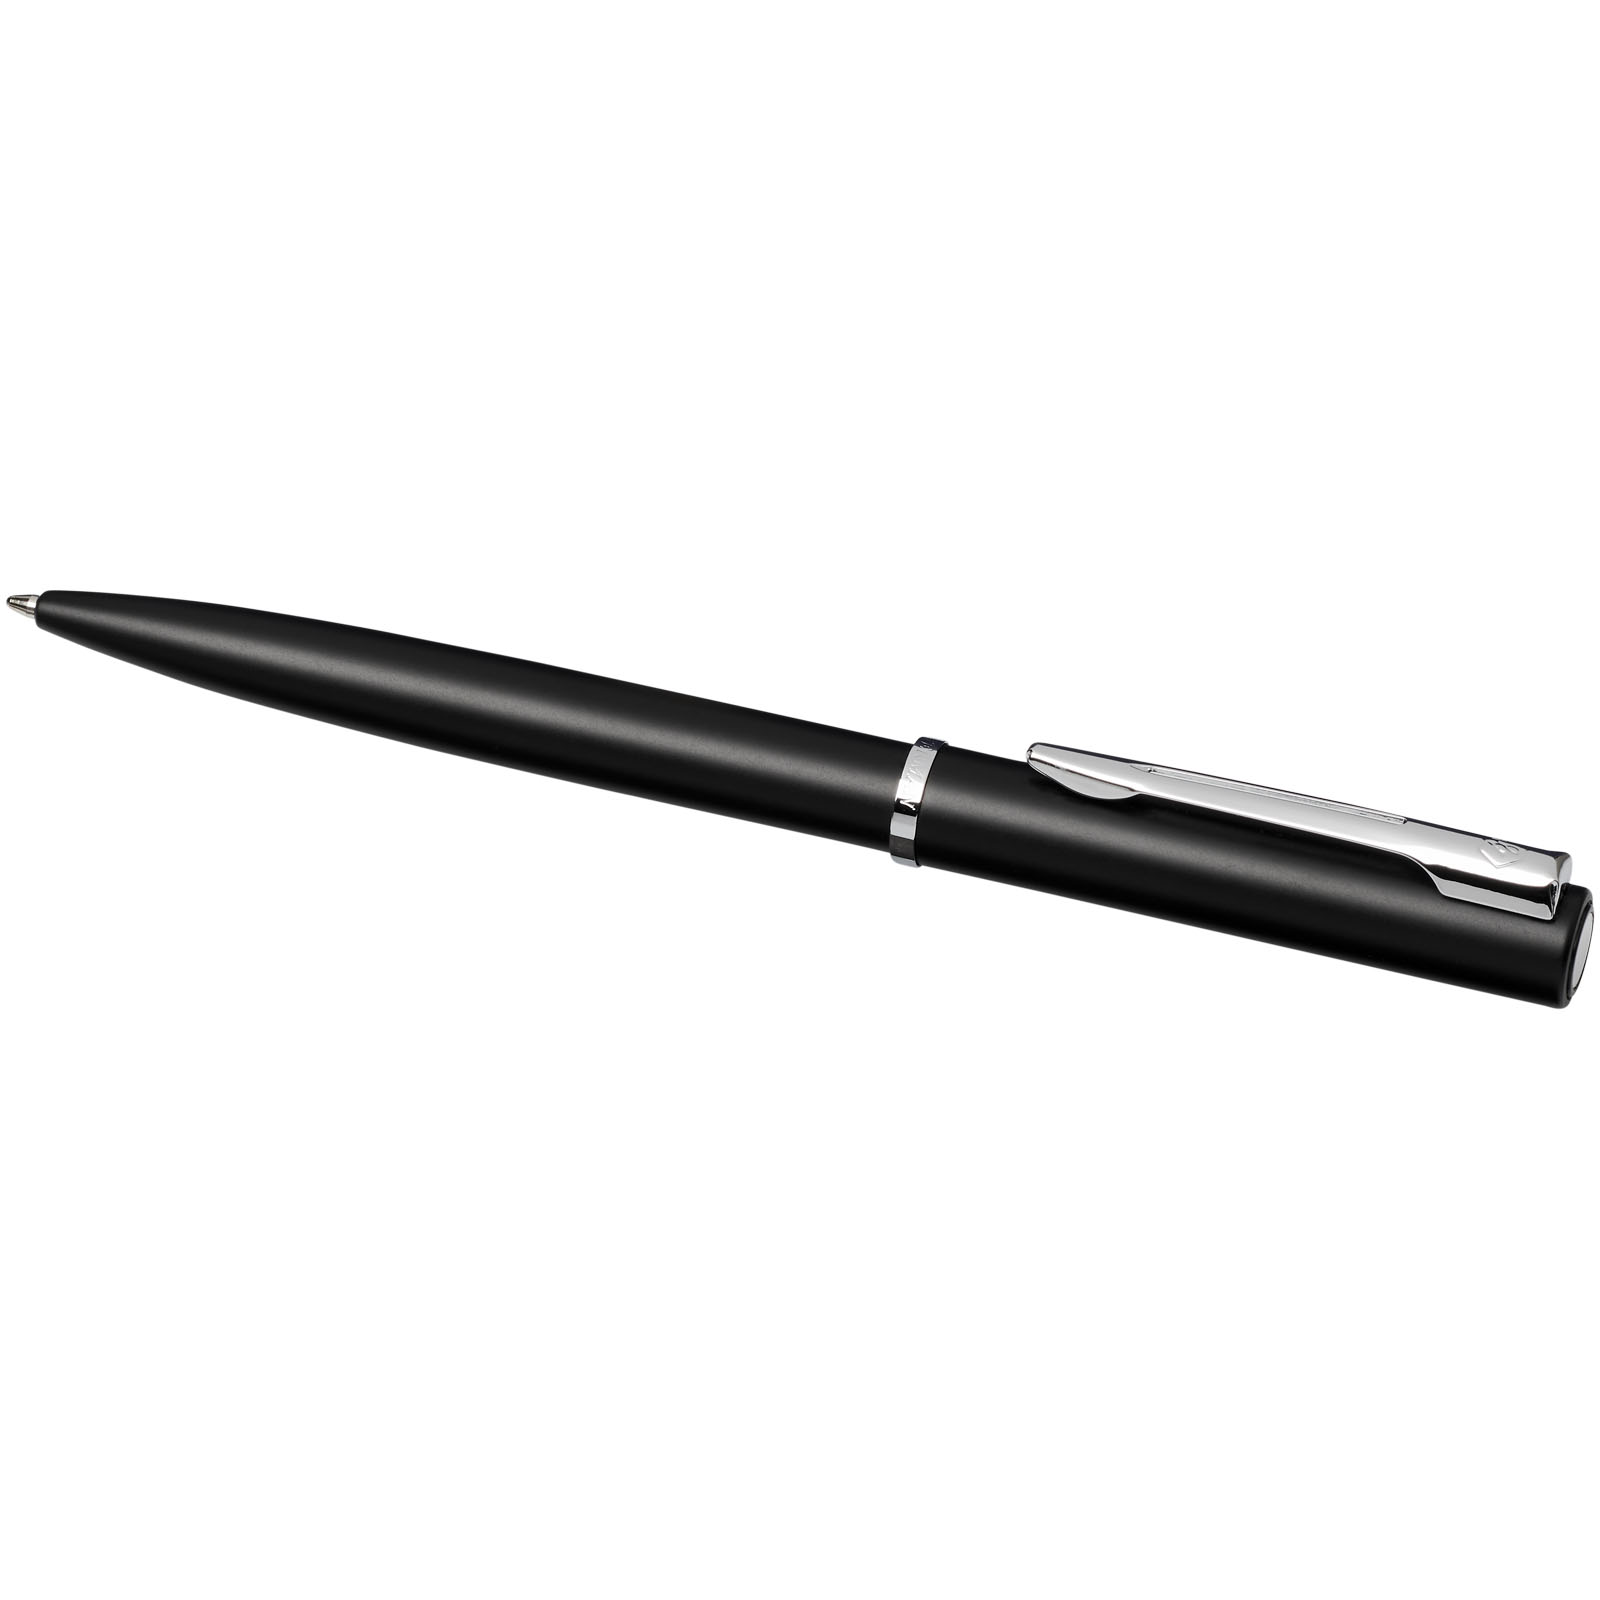 Parure de stylos publicitaires - Parure de stylos bille et roller Allure  - 3